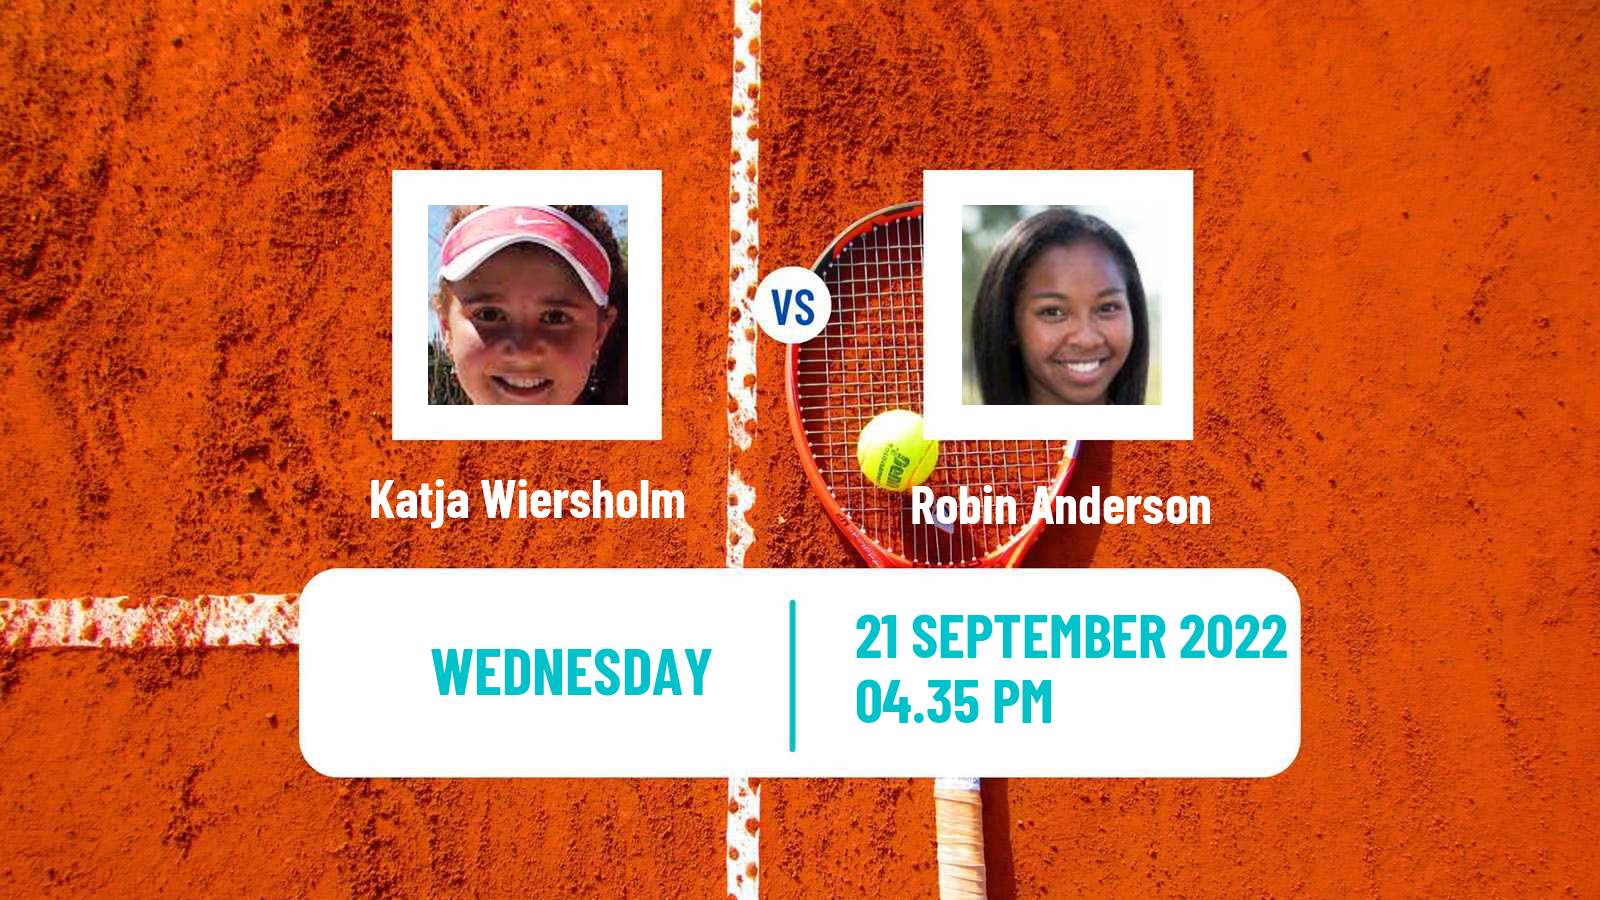 Tennis ITF Tournaments Katja Wiersholm - Robin Anderson